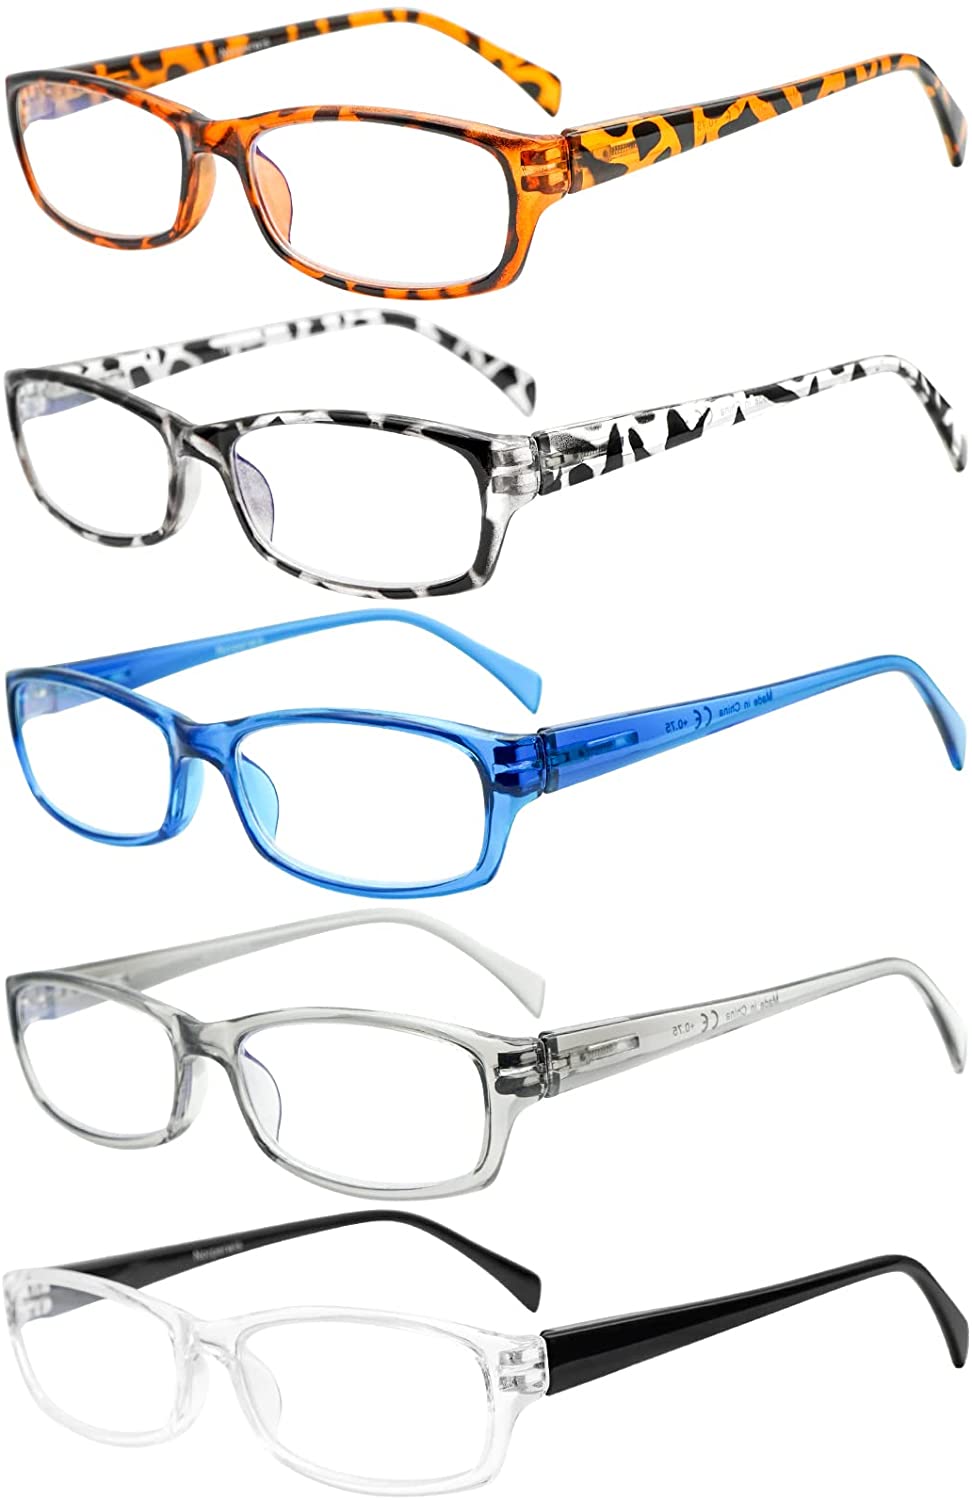 5 Pack Computer Reading Glasses Men and Women Anti Eyestrain Blue Light Blocking Glasses for Reading 